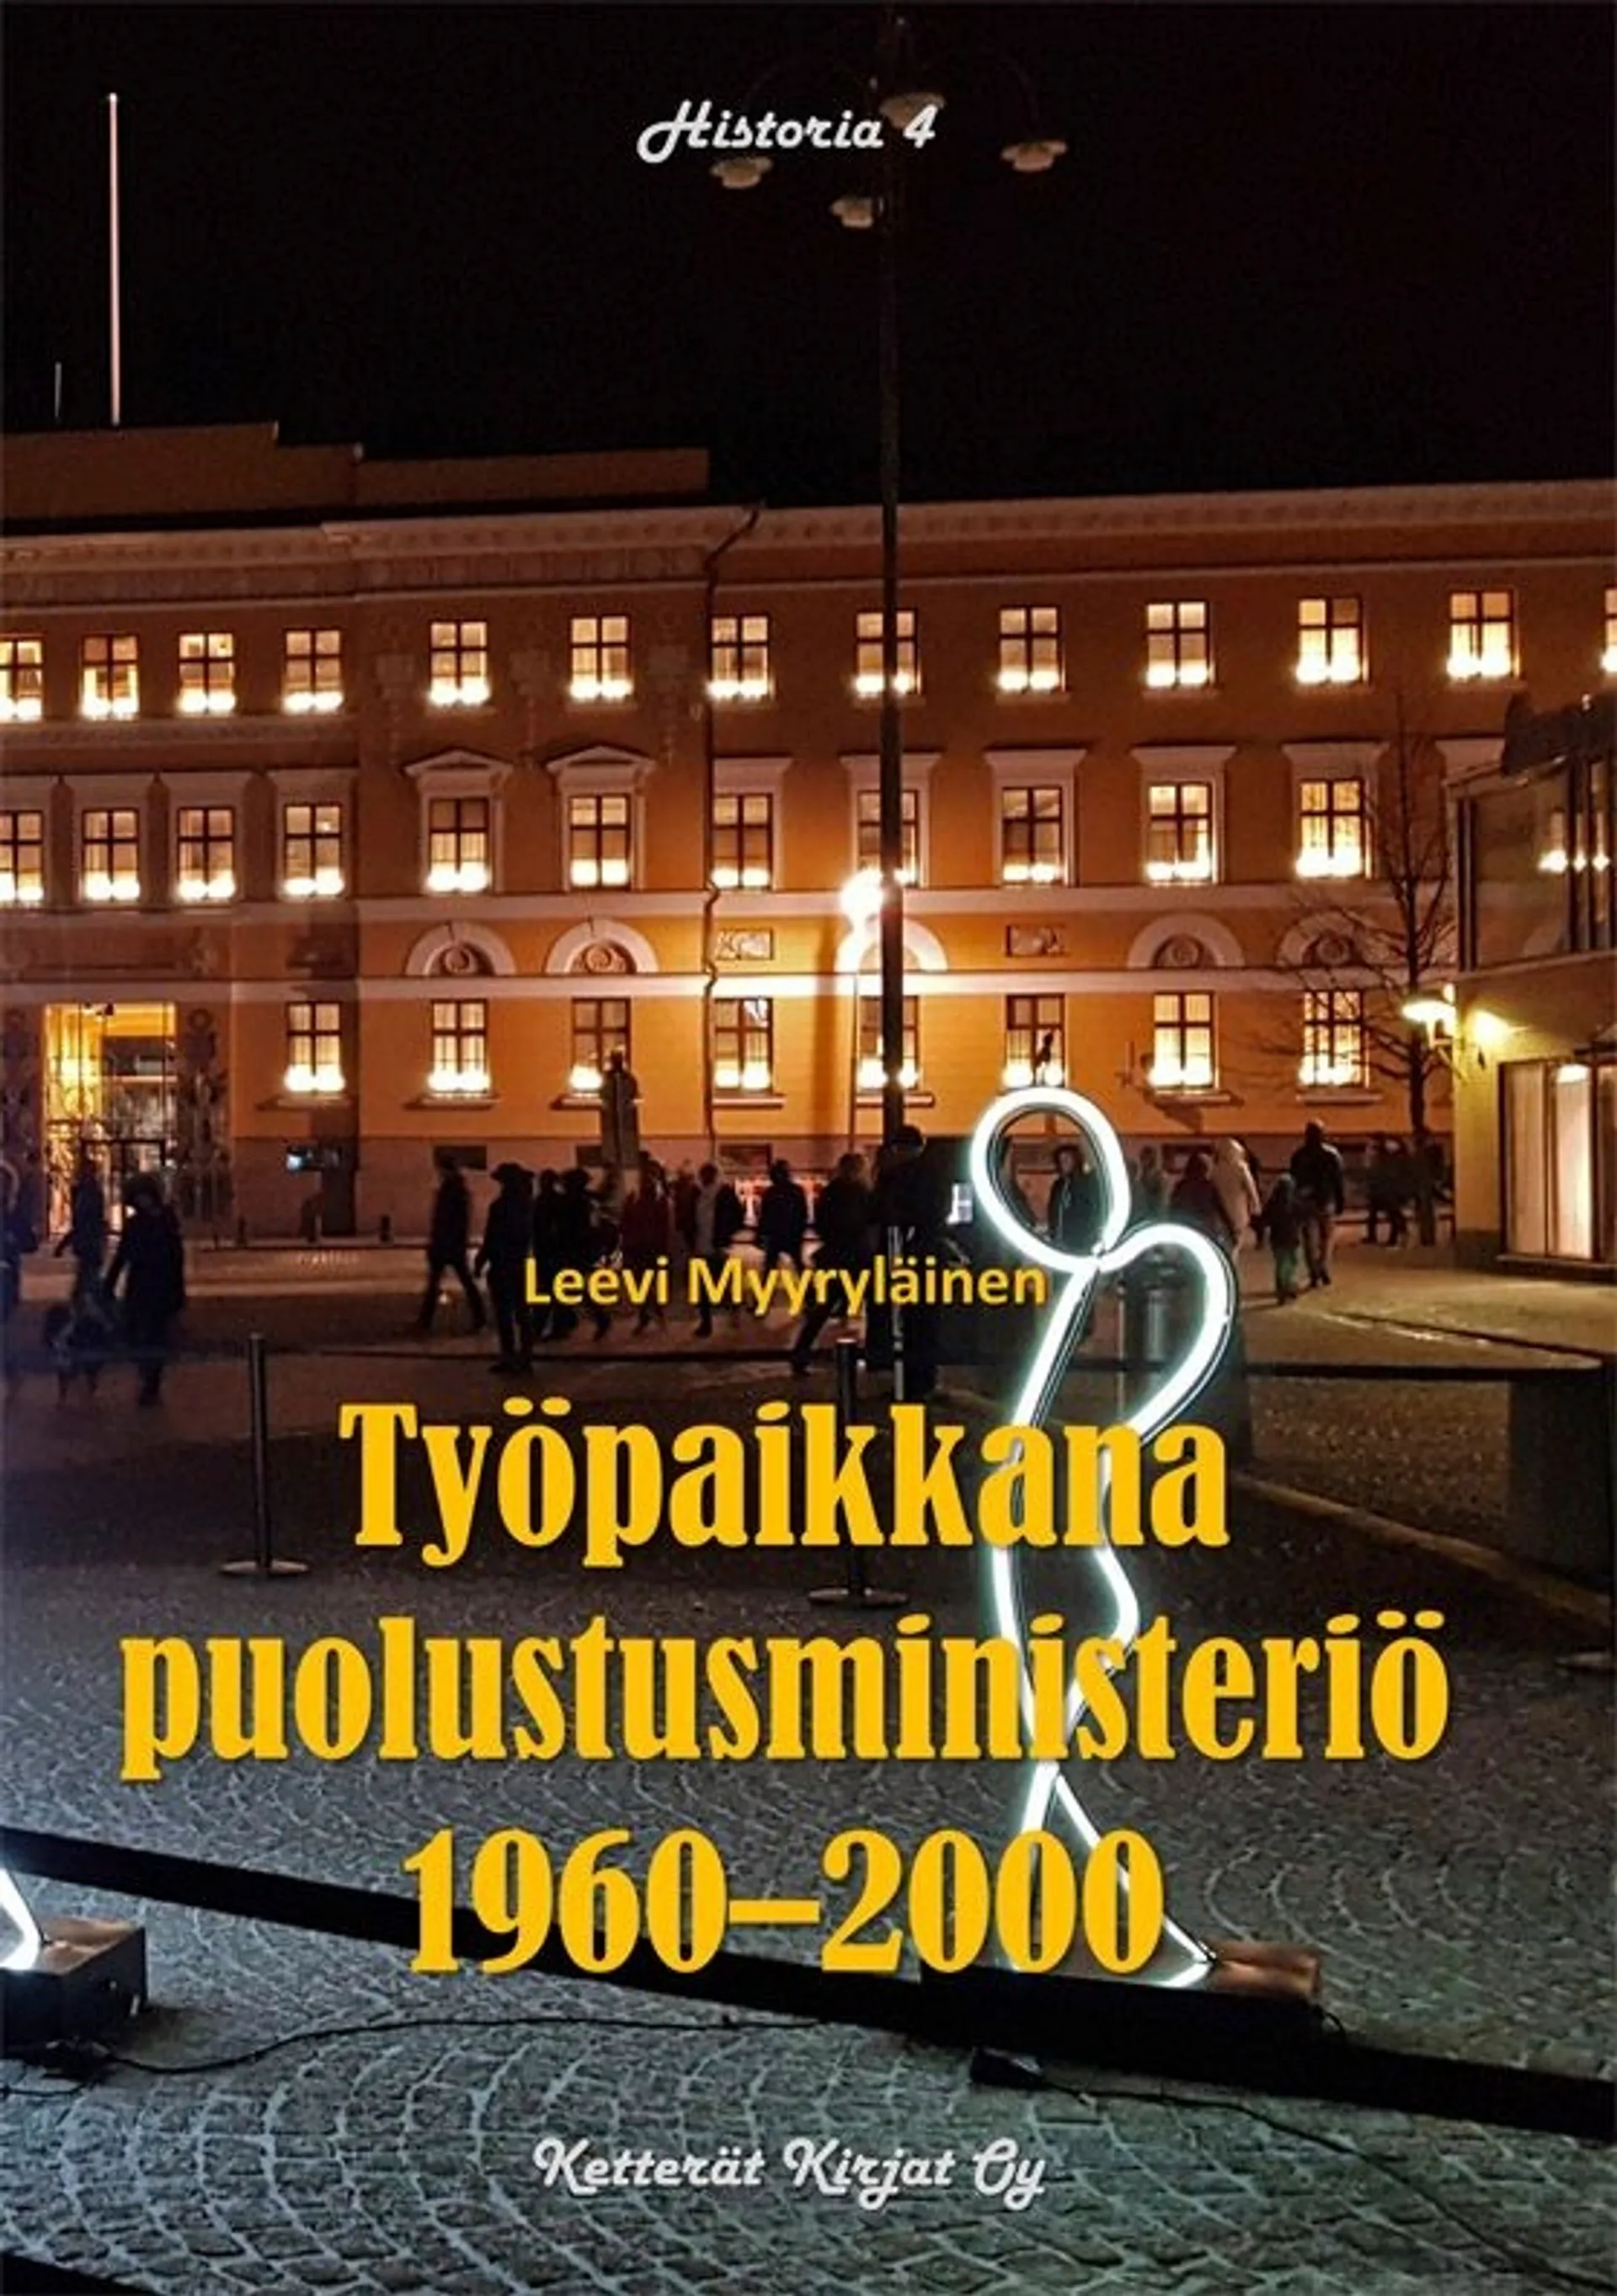 Myyryläinen, Työpaikkana puolustusministeriö 1960-2000